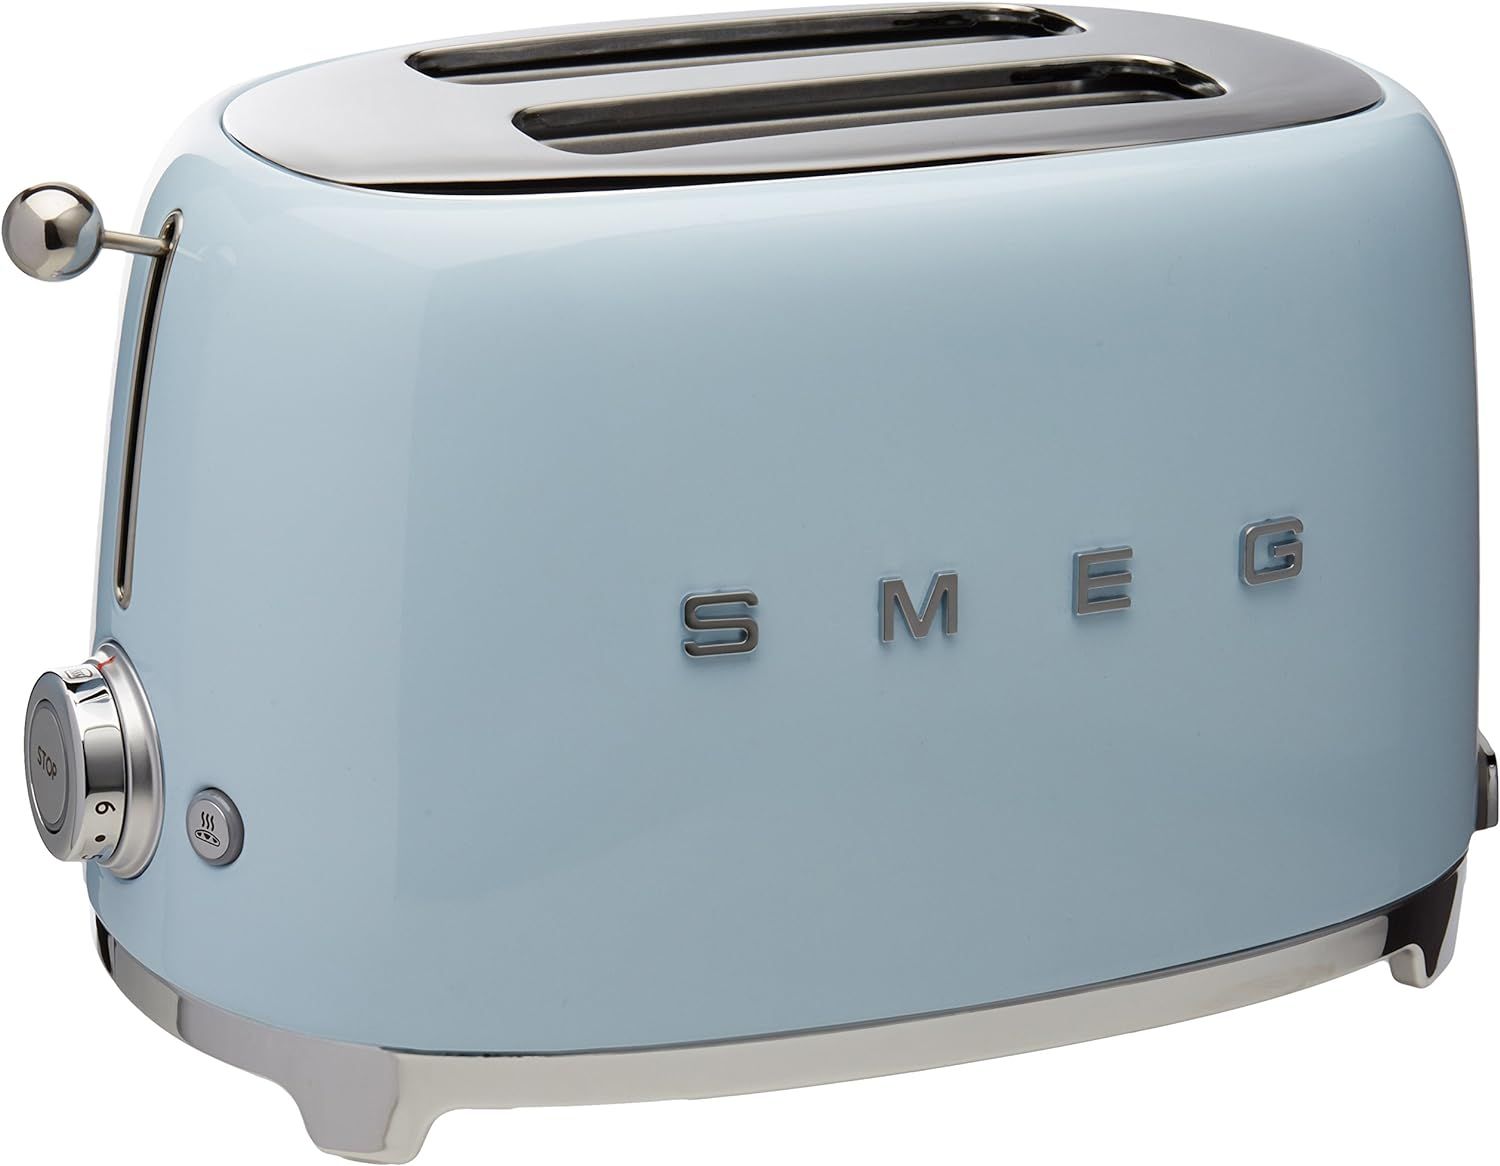 Smeg TSF01PBUS 50's Retro Style Aesthetic 2 Slice Toaster, Pastel Blue | Amazon (US)